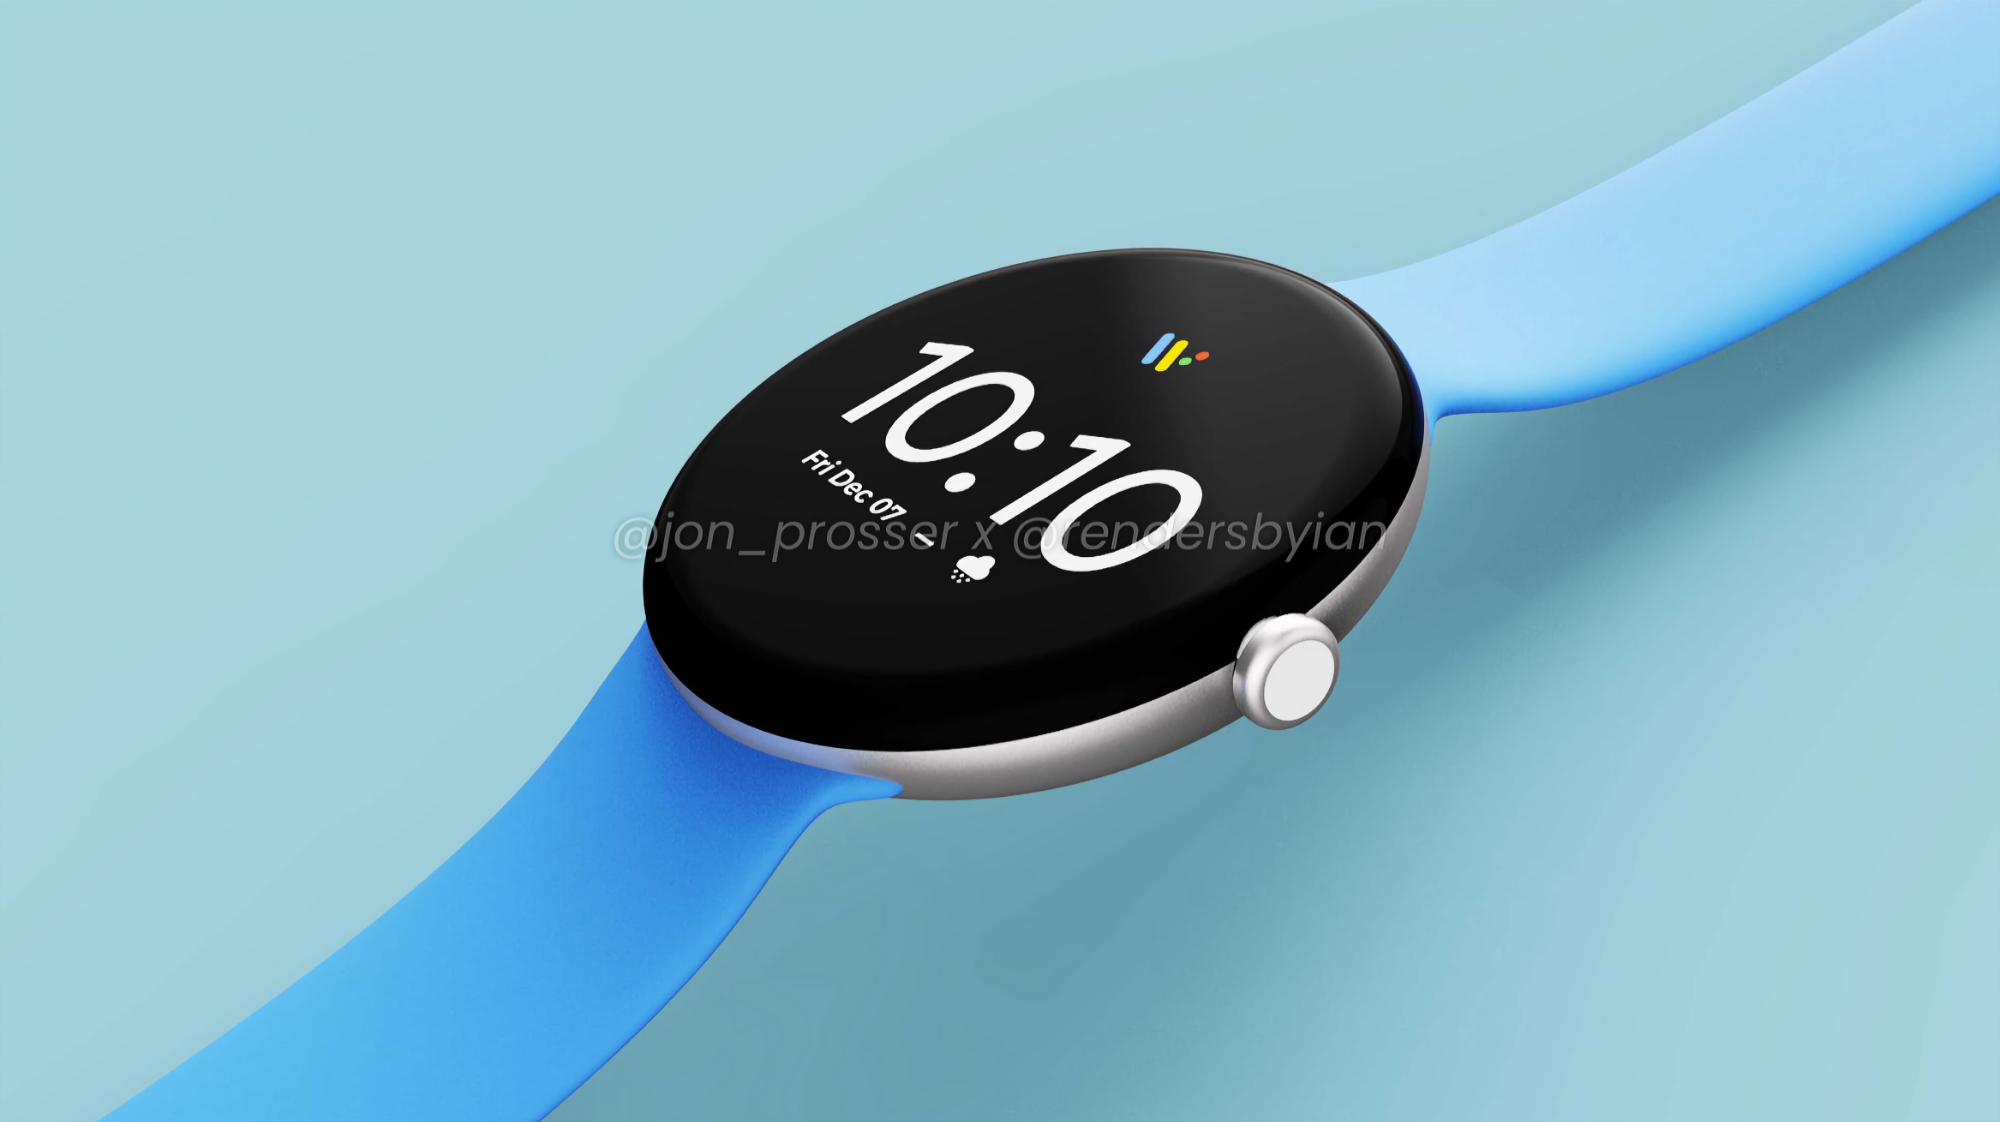 Business Insider : Google reviendra sur le marché des smartwatch, la première nouveauté sortira en 2022